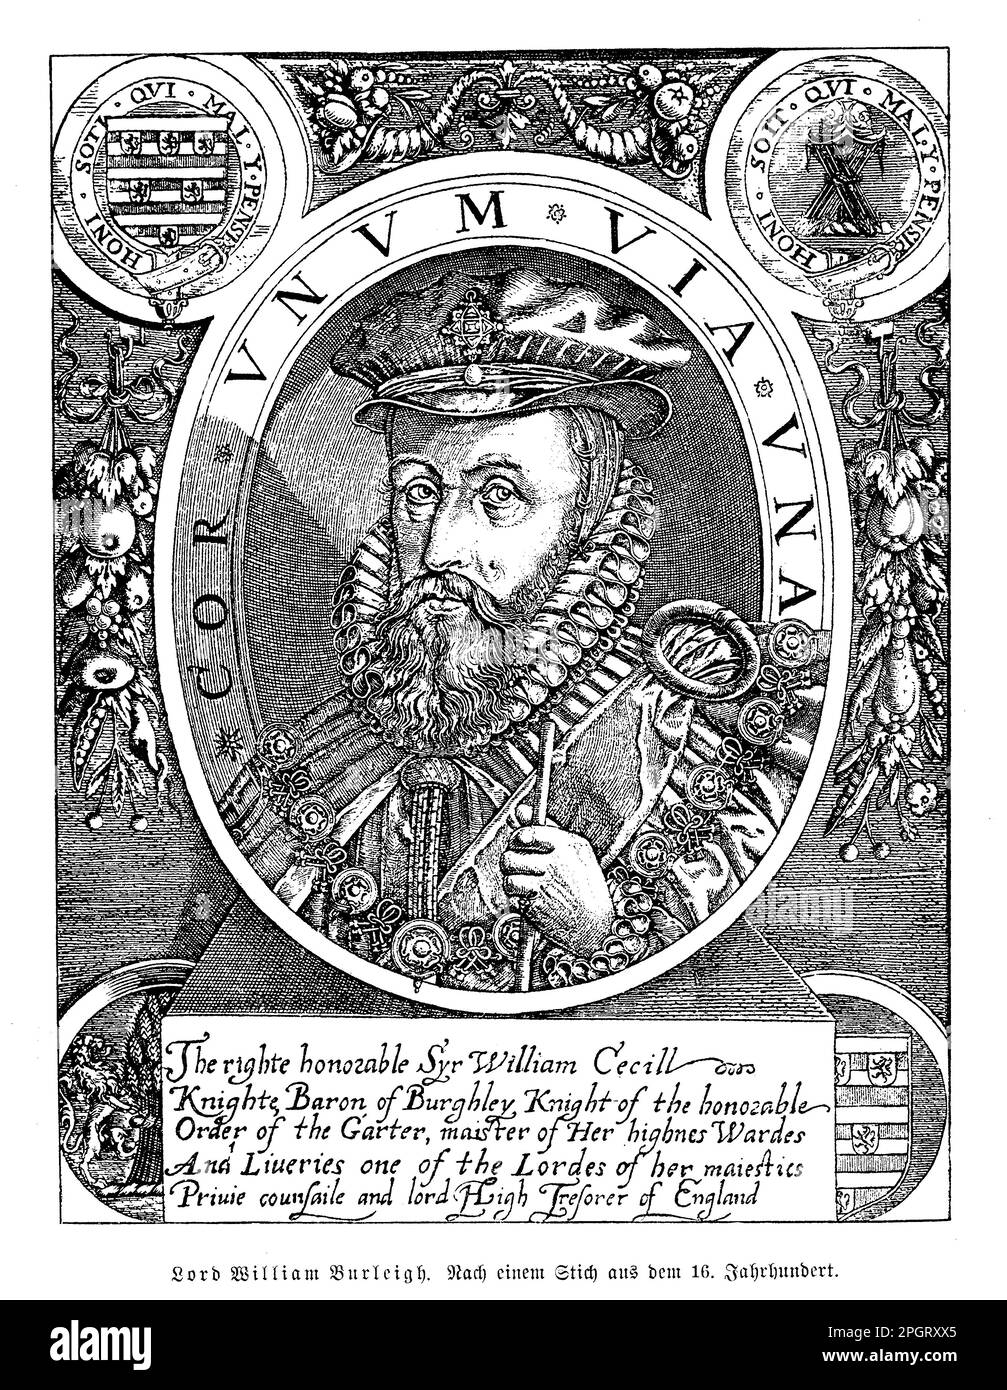 William Cecil, auch bekannt als Lord Burghley, war ein prominenter englischer Staatsmann, der von 1520 bis 1598 lebte. Er war Außenminister und Lord-Schatzmeister unter Königin Elizabeth I. und spielte eine Schlüsselrolle in der elisabethanischen Politik. Cecil war ein erfahrener Verwalter und Diplomat und war während seiner Amtszeit an vielen wichtigen Entscheidungen beteiligt, darunter die Errichtung der Kirche von England und die Niederlage der spanischen Armada. Er war auch Schutzpatron der Künste und unterstützte die Arbeit von Schriftstellern wie Edmund Spenser. Stockfoto